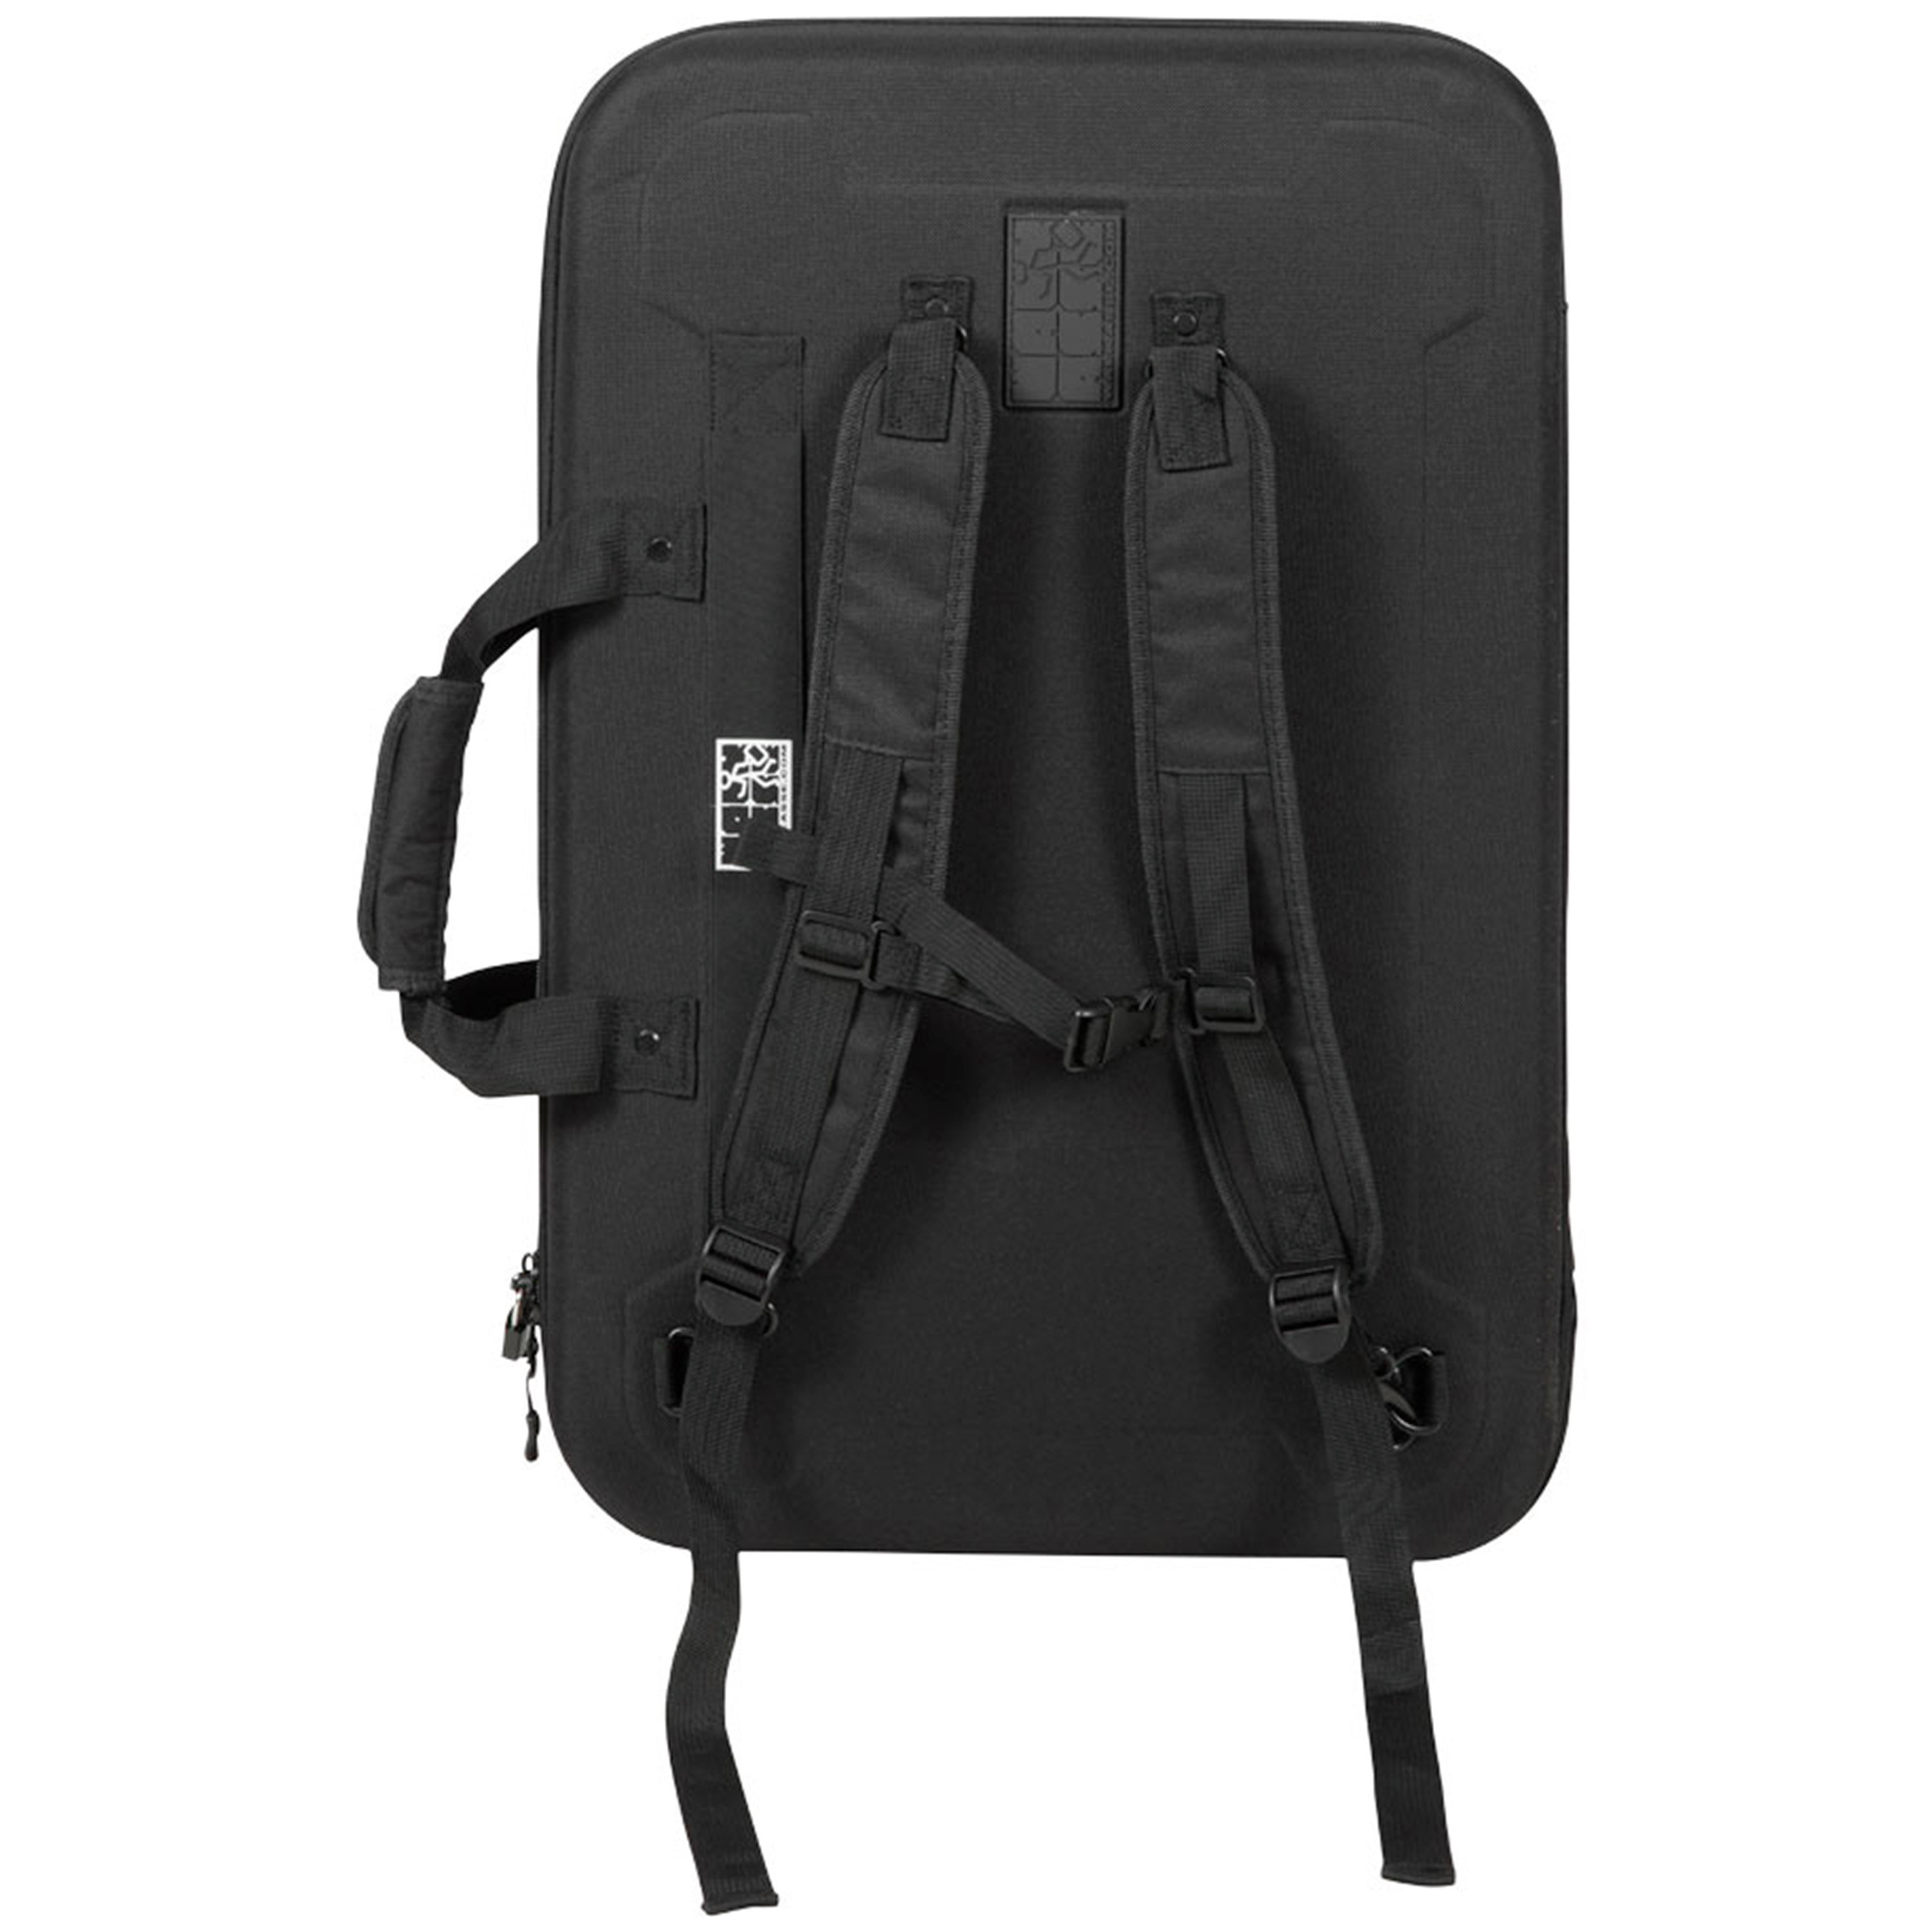 Walkasse Eva Case 12'' CDJ-3000 / DJM-900 Backpack